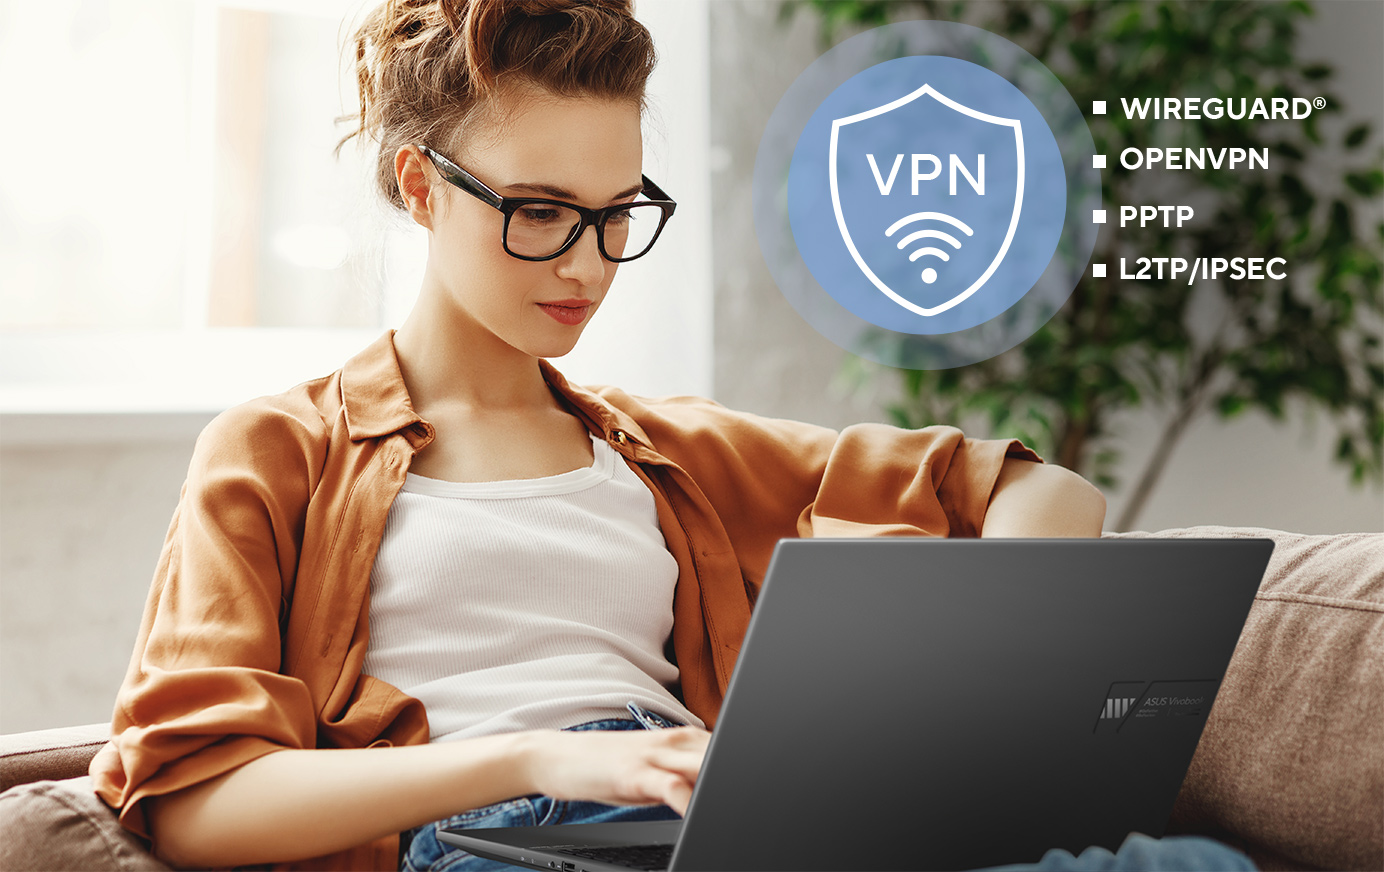 Az ASUS routerek többféle VPN biztonsági protokollt támogatnak, így a WireGuard®, OpenVPN, PPTP, és L2TP/IPSec protokollt is.